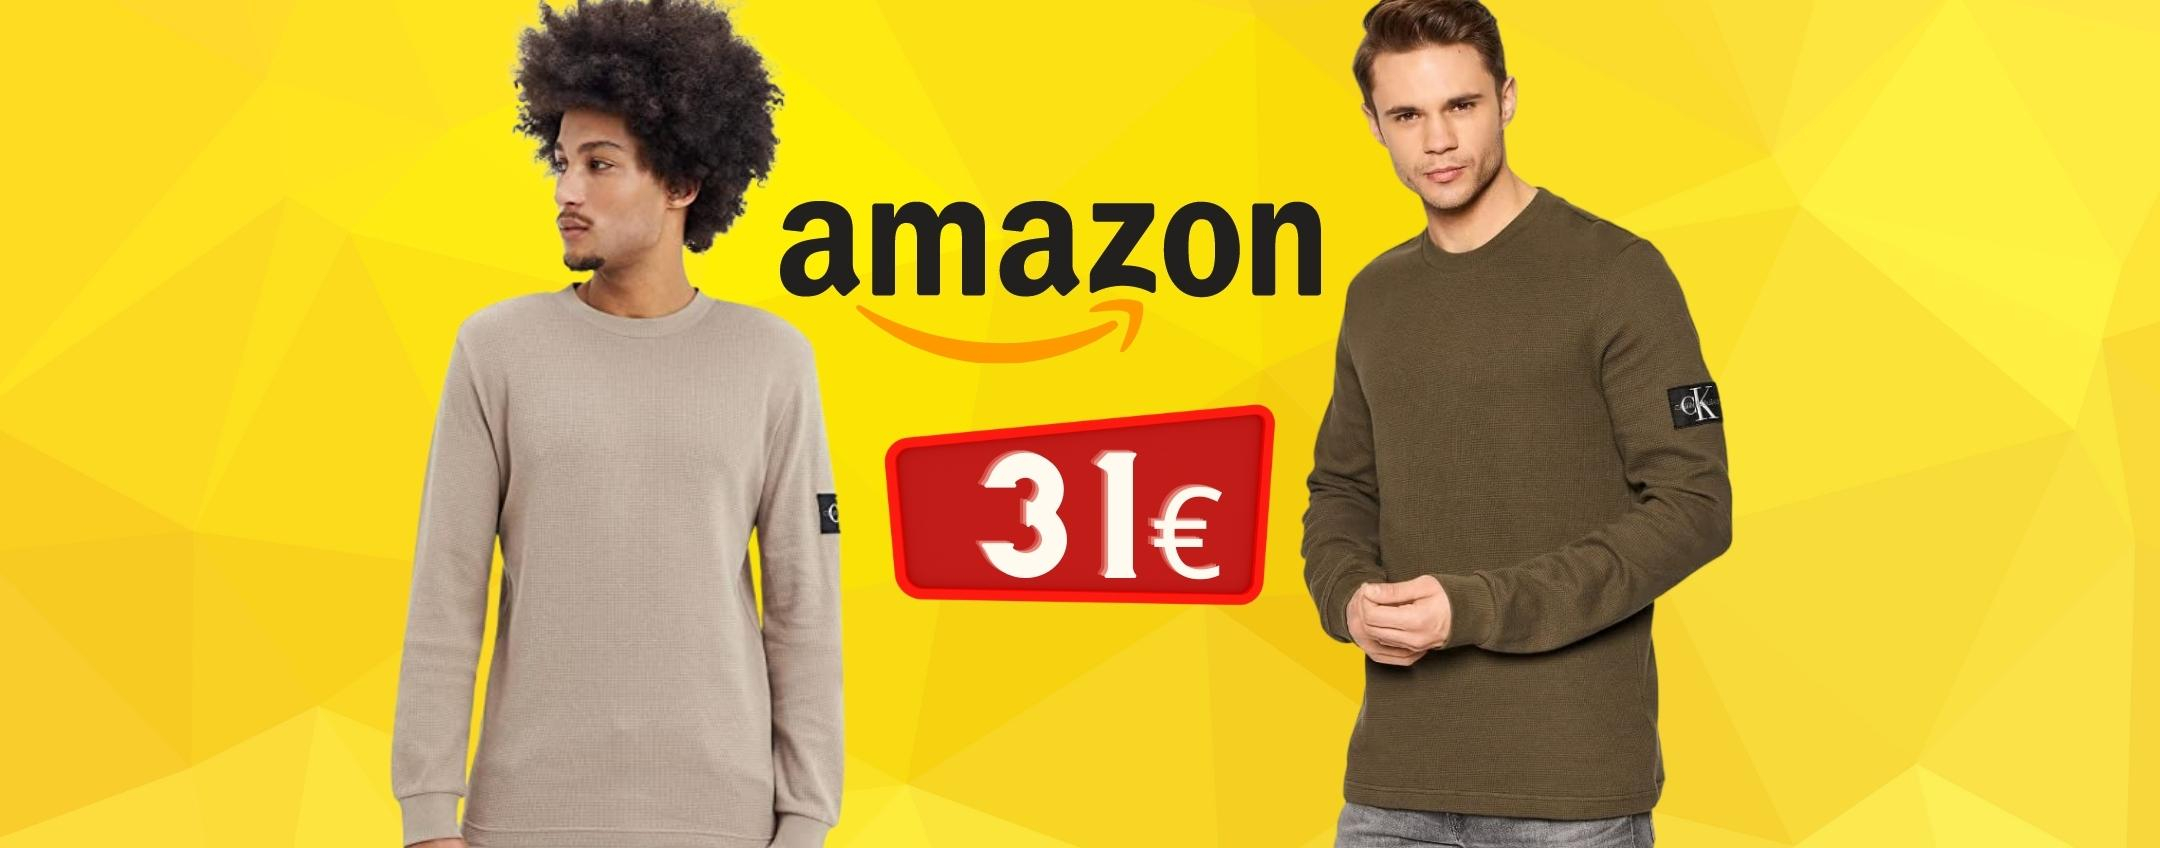 Calvin Klein: maglione BELLISSIMO a prezzo SHOCK (31€)